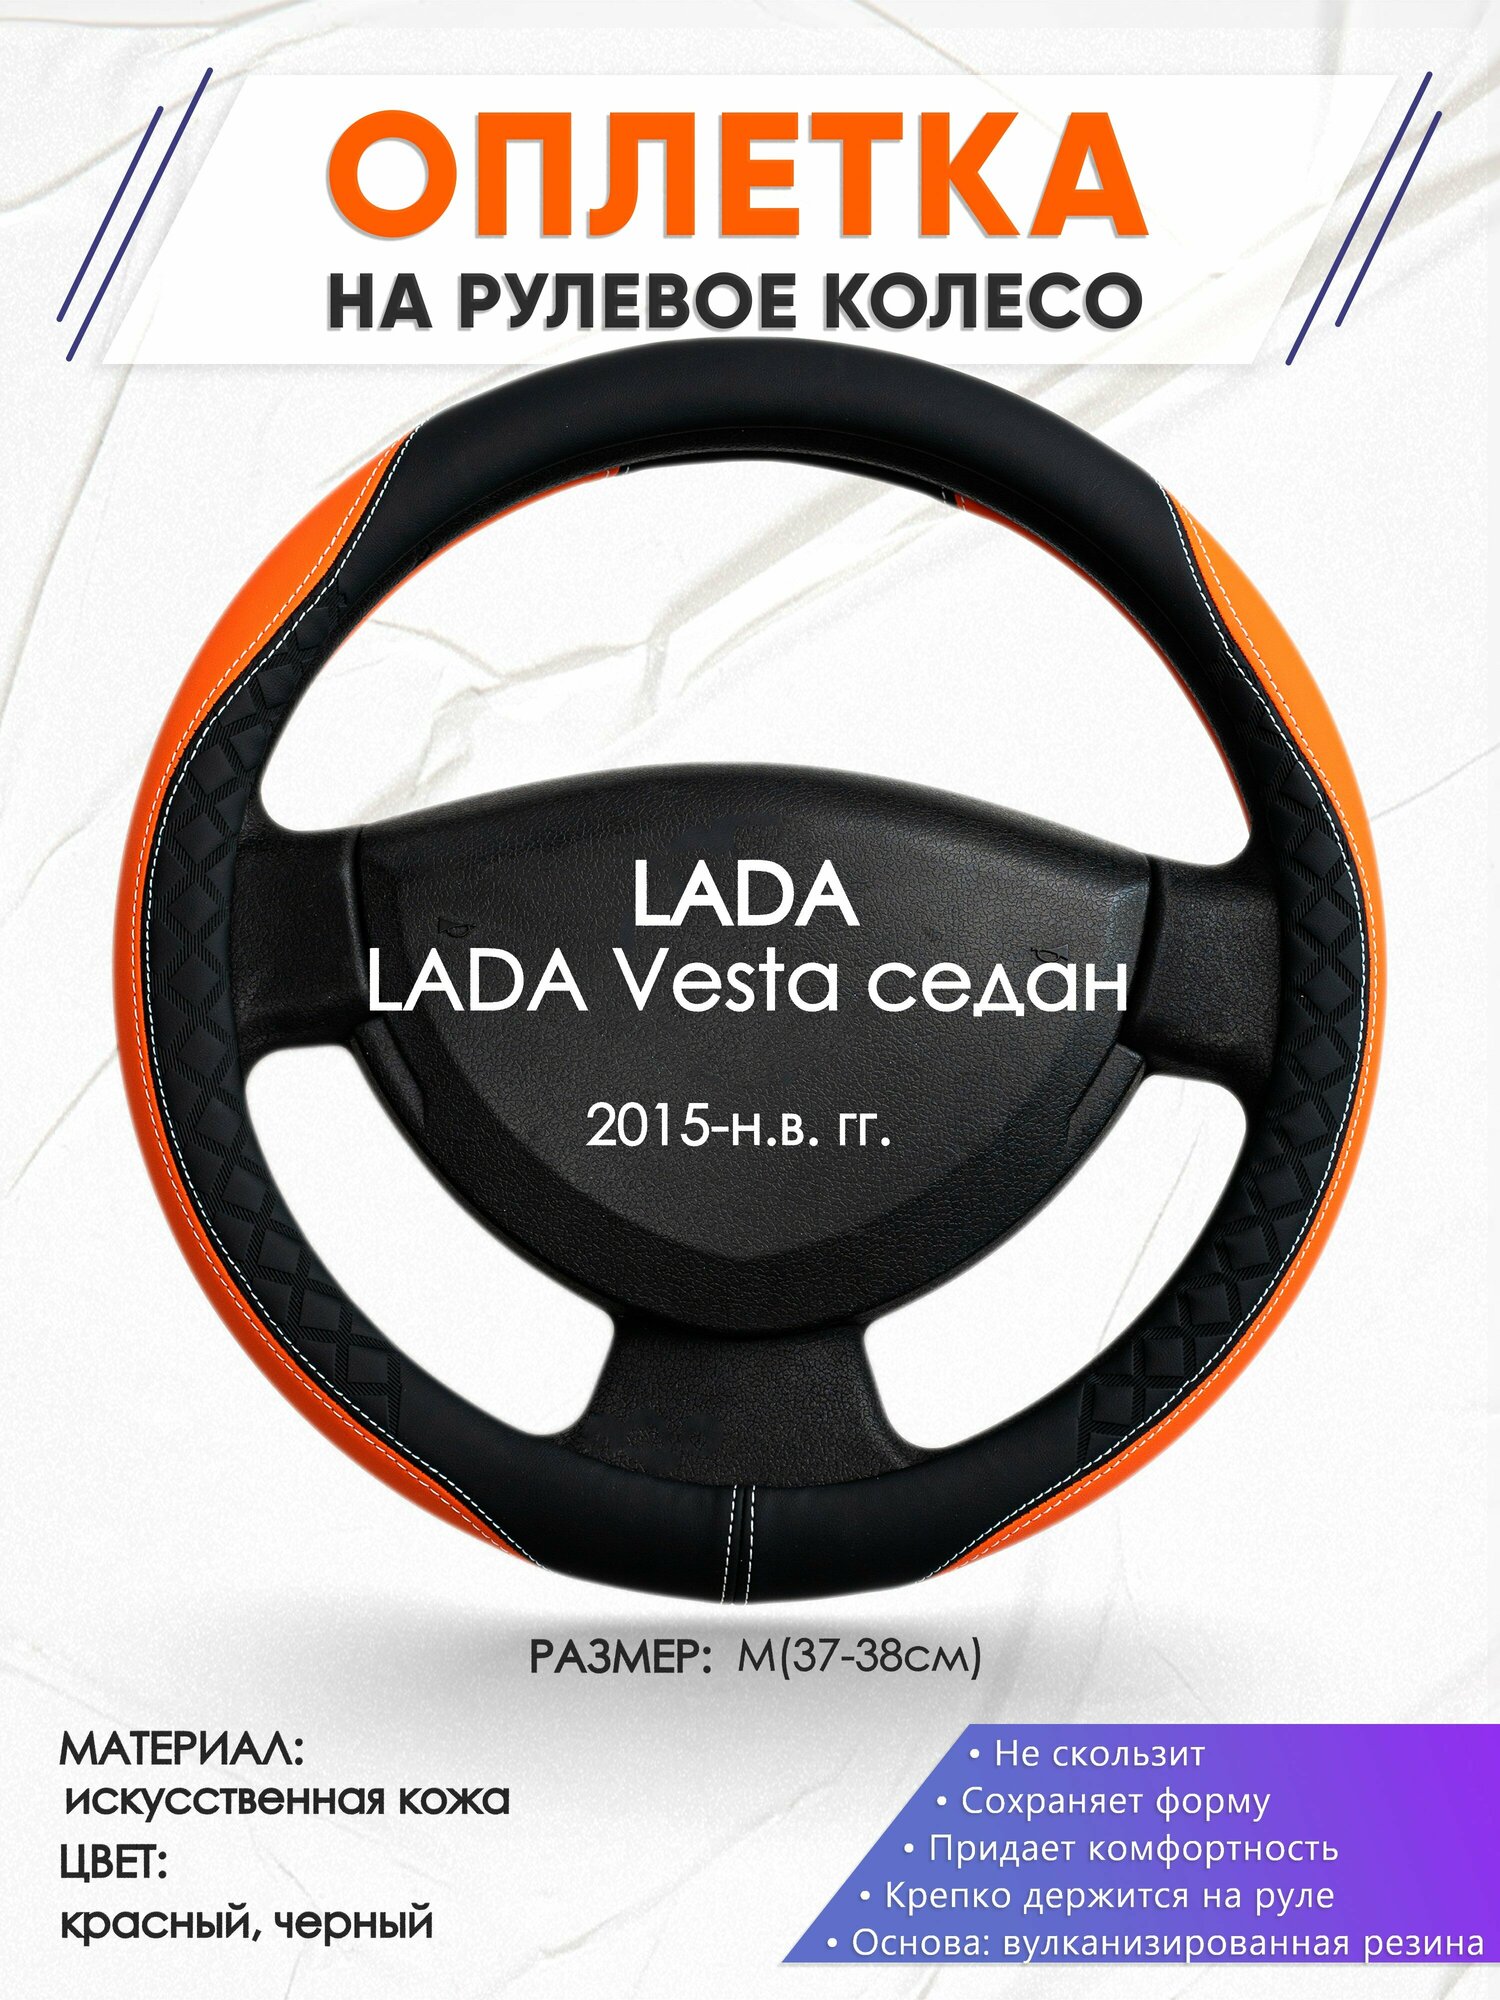 Оплетка наруль для LADA Vesta седан(Лада Веста) 2015-н. в. годов выпуска, размер M(37-38см), Искусственная кожа 69